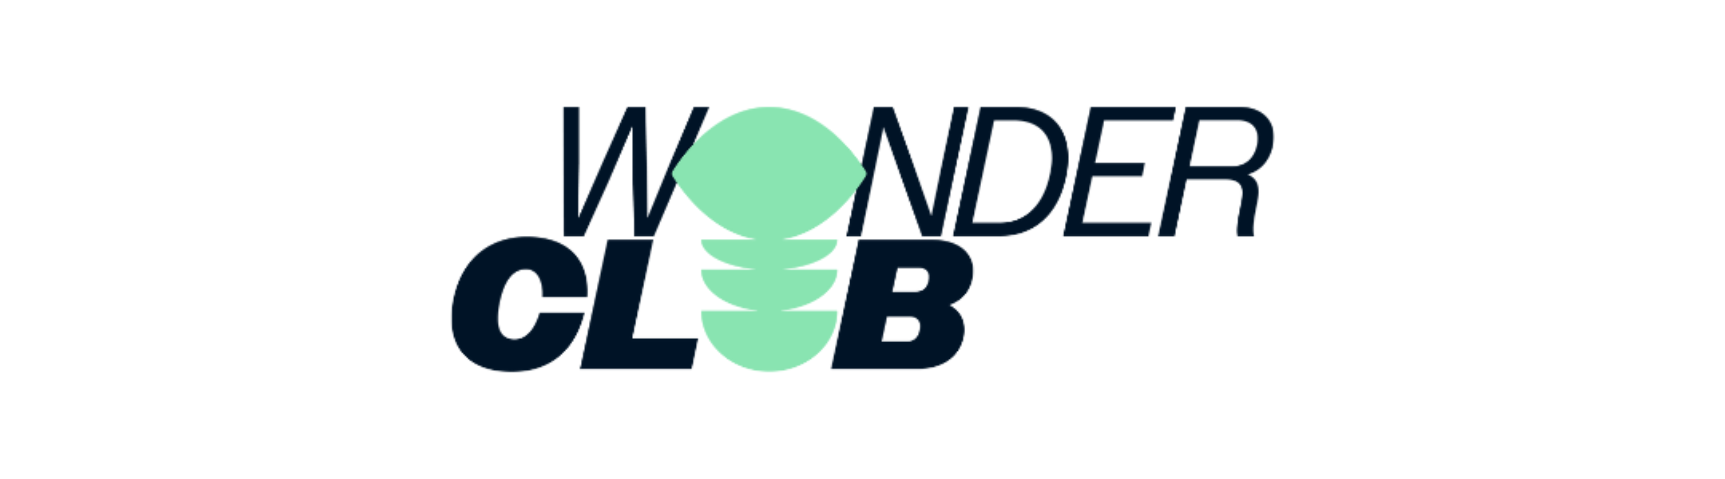 Wonder club banner